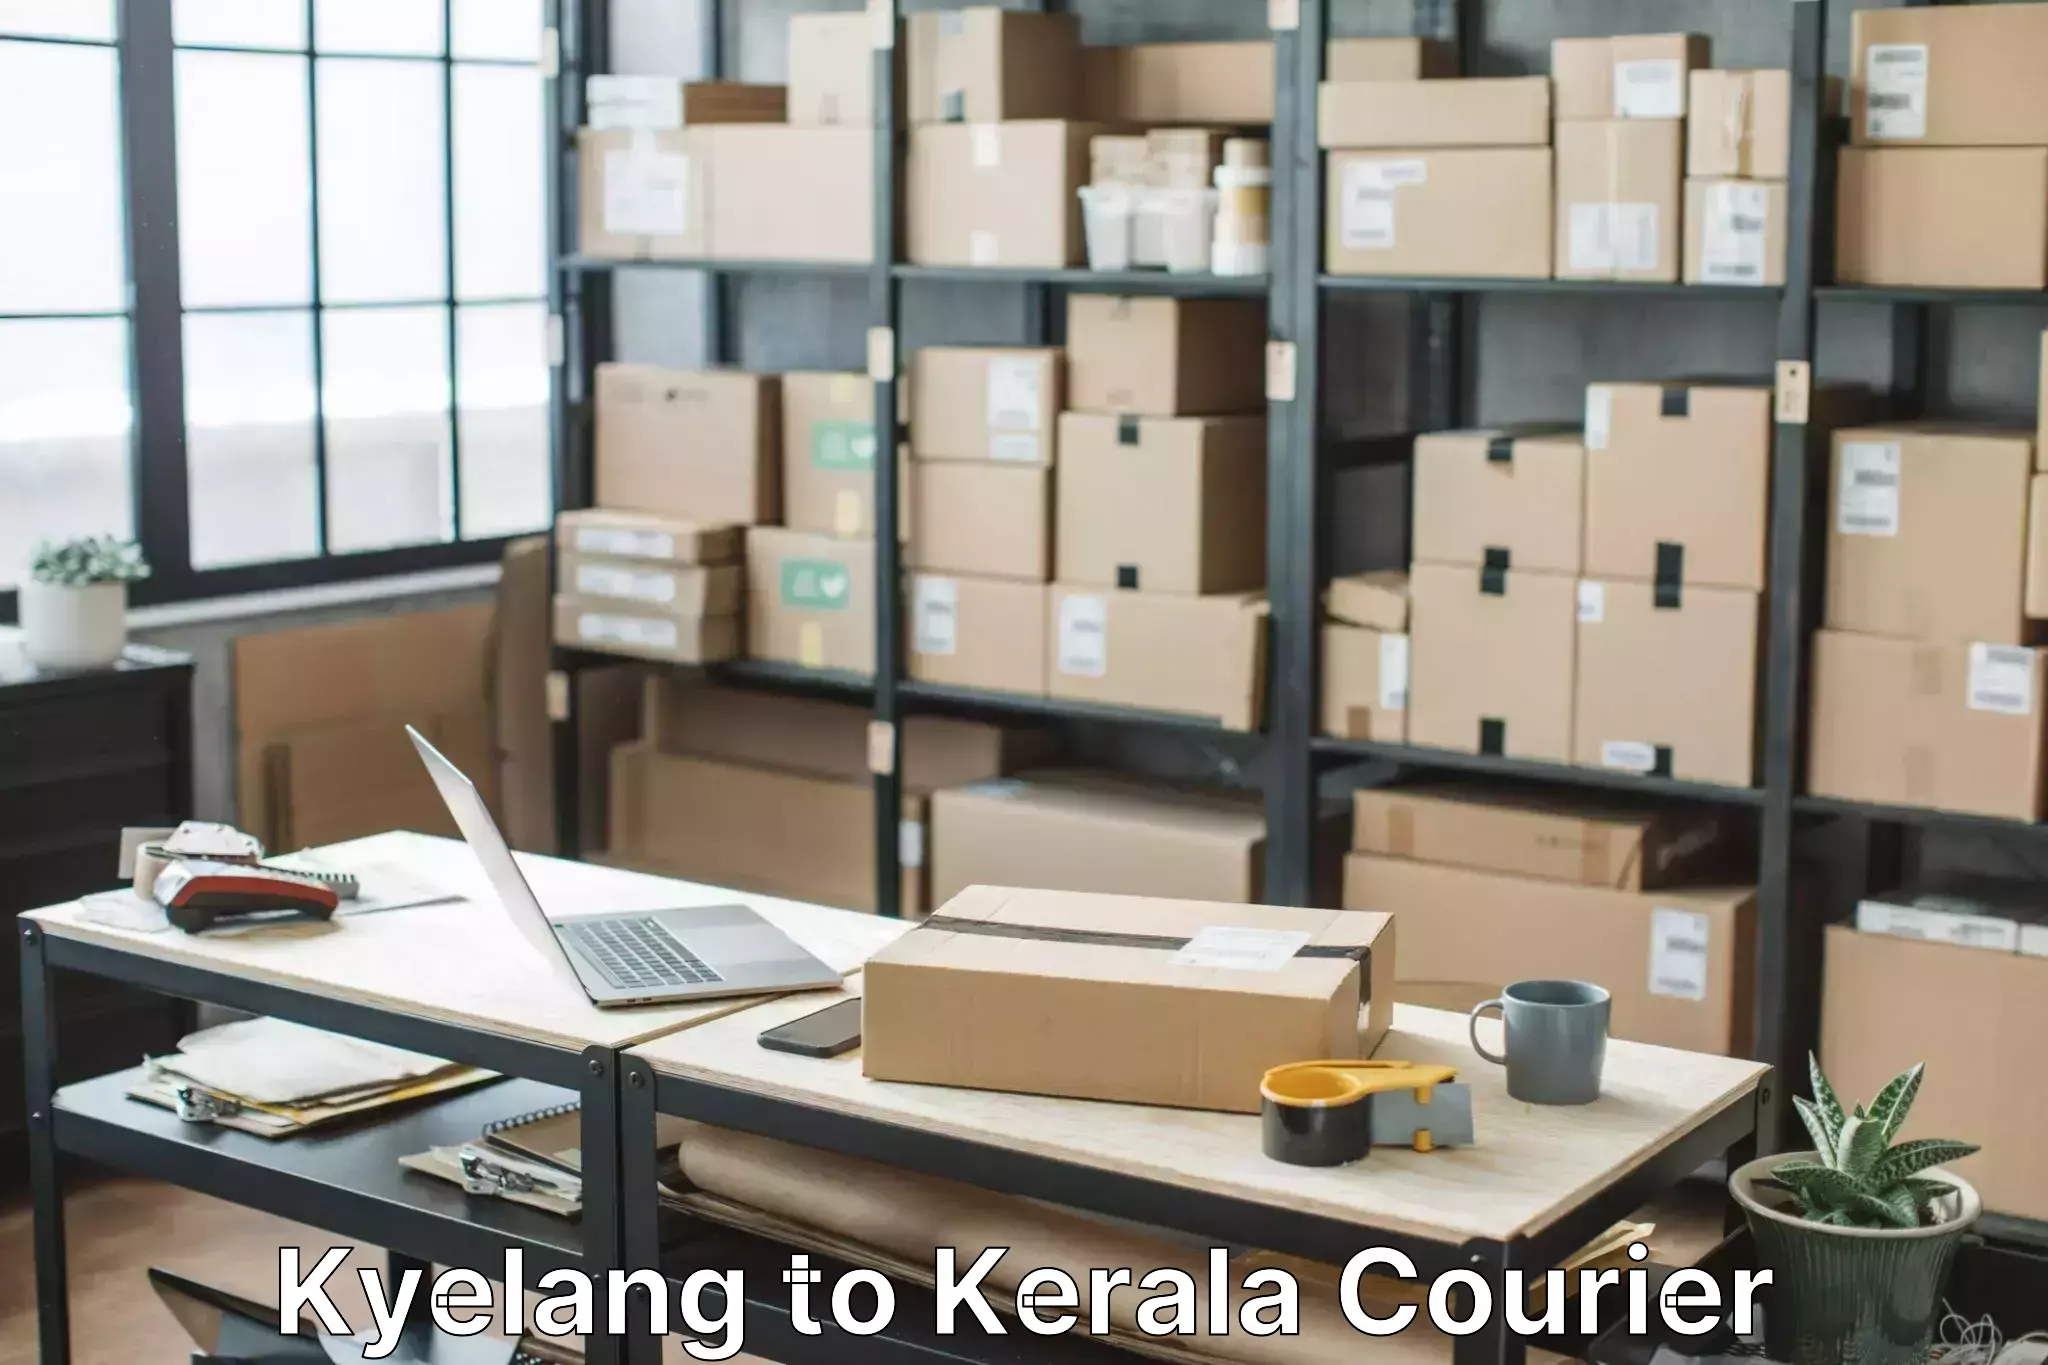 Professional home shifting Kyelang to Kerala